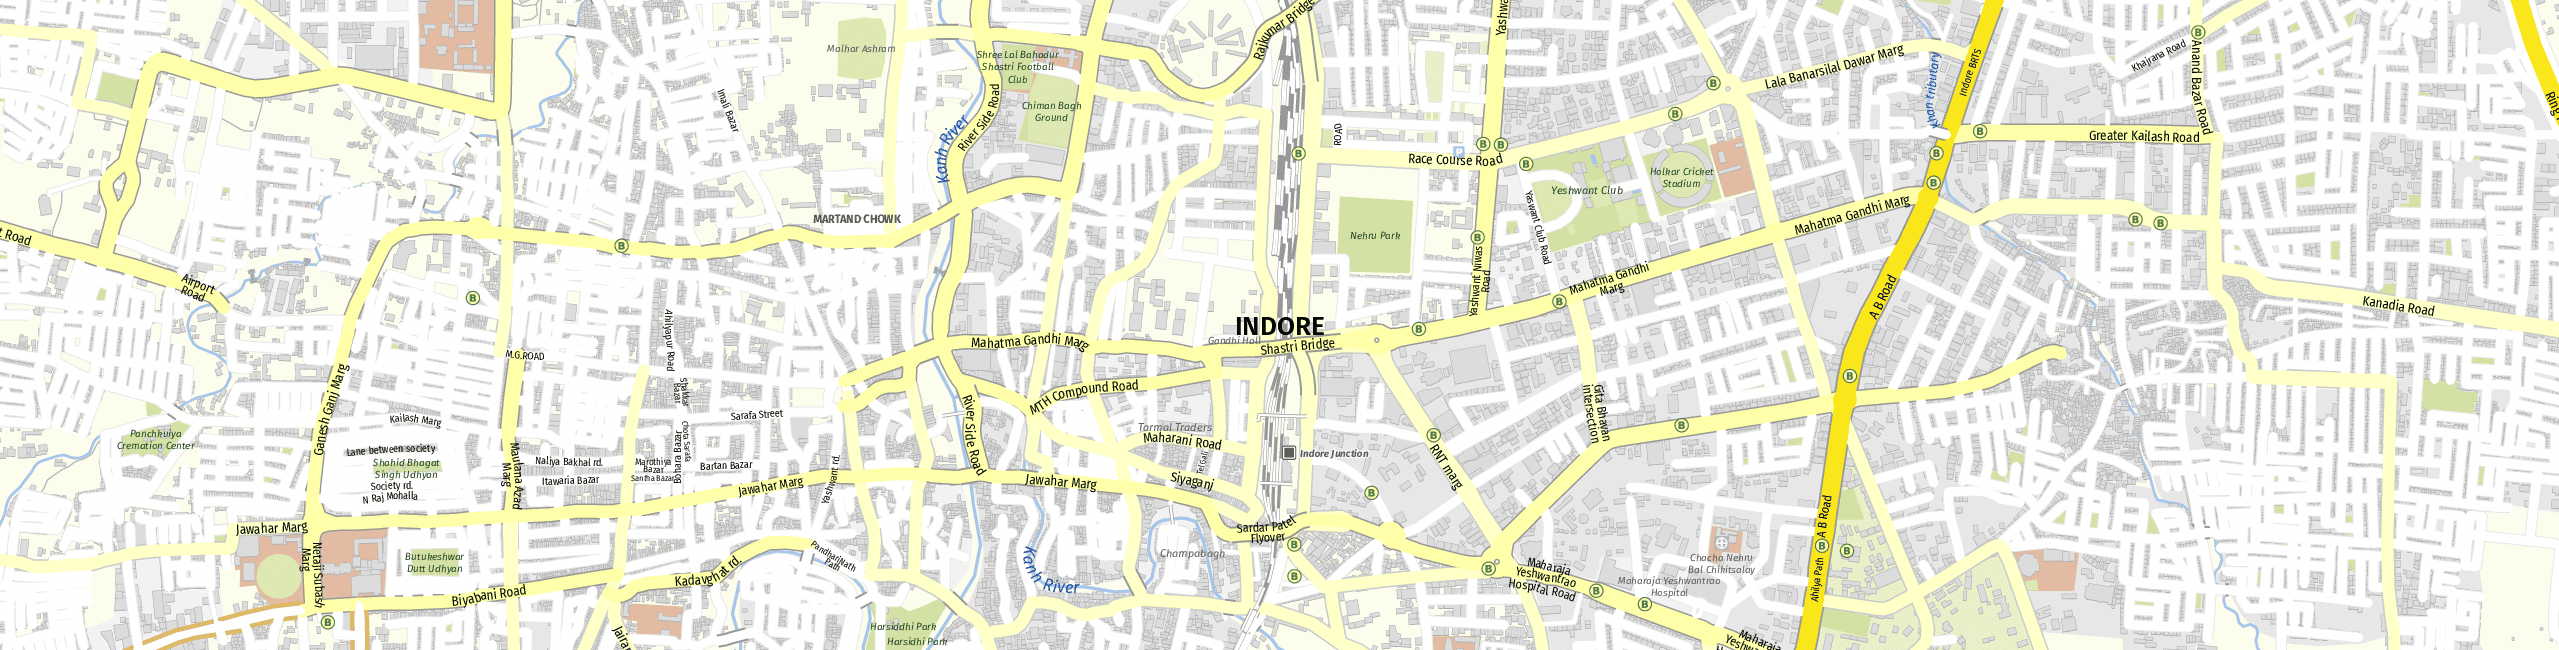 Stadtplan Indore zum Downloaden.